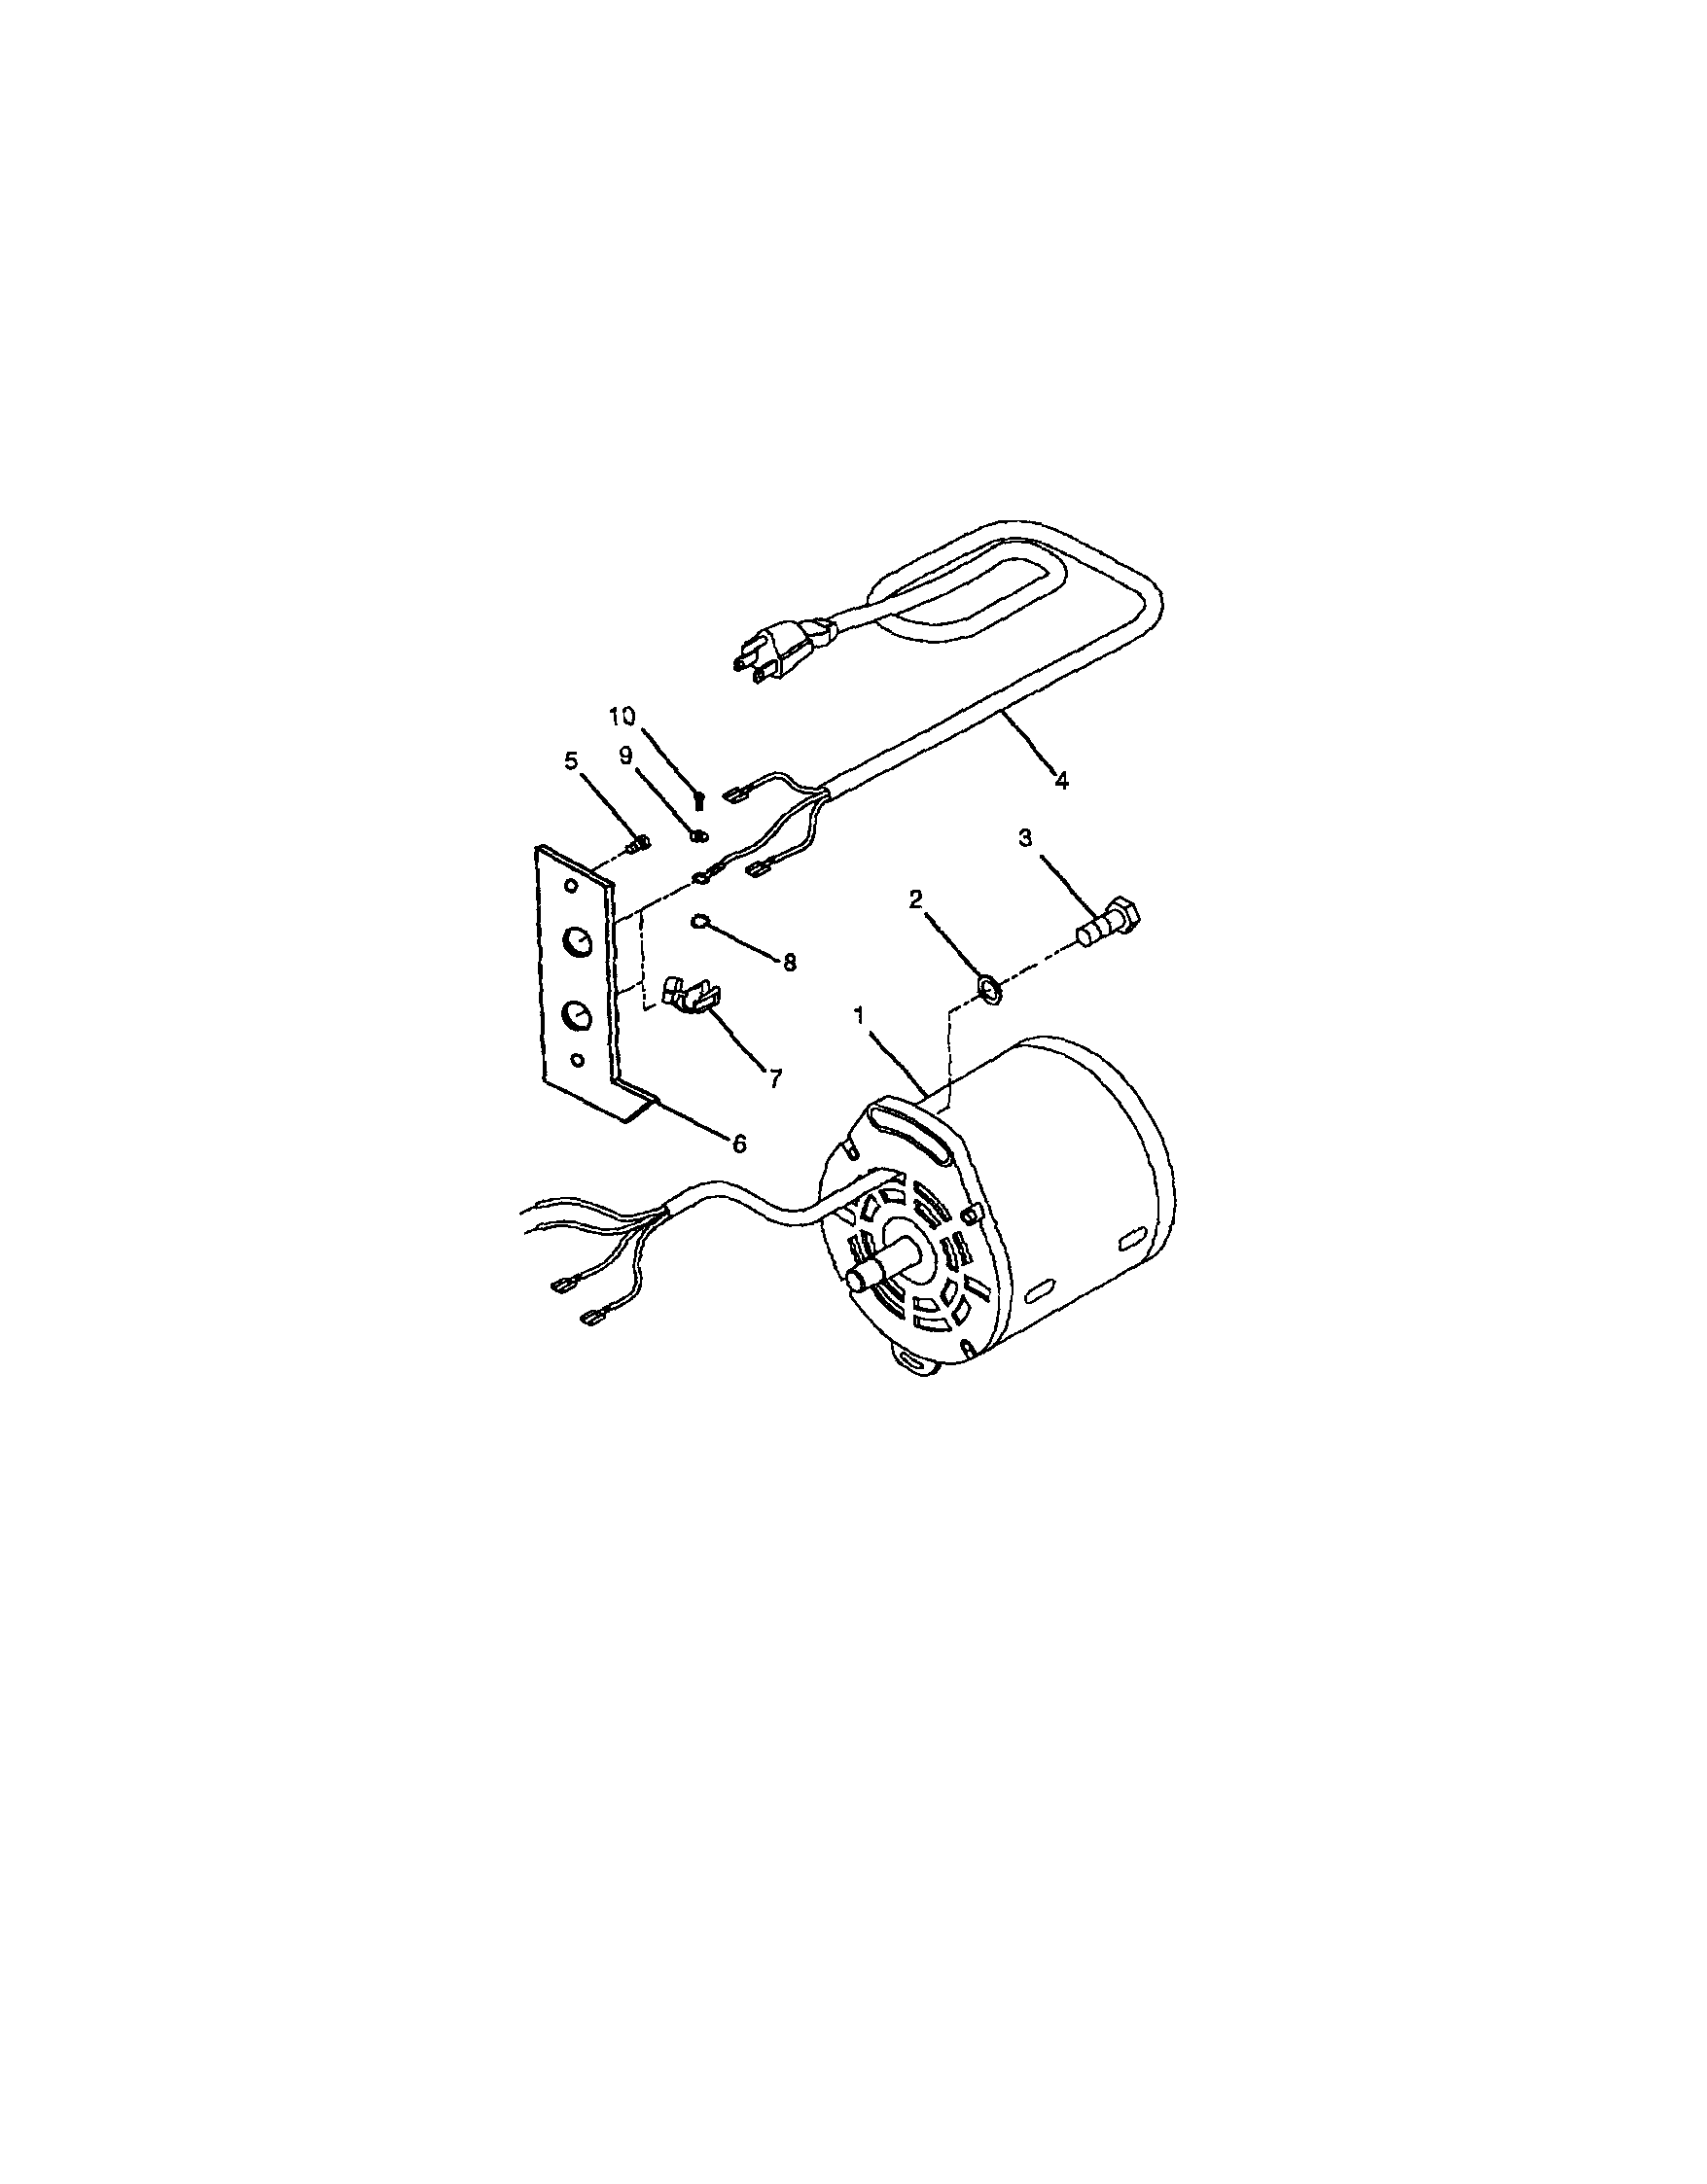 craftsman table saw motor wiring diagram  | 736 x 516